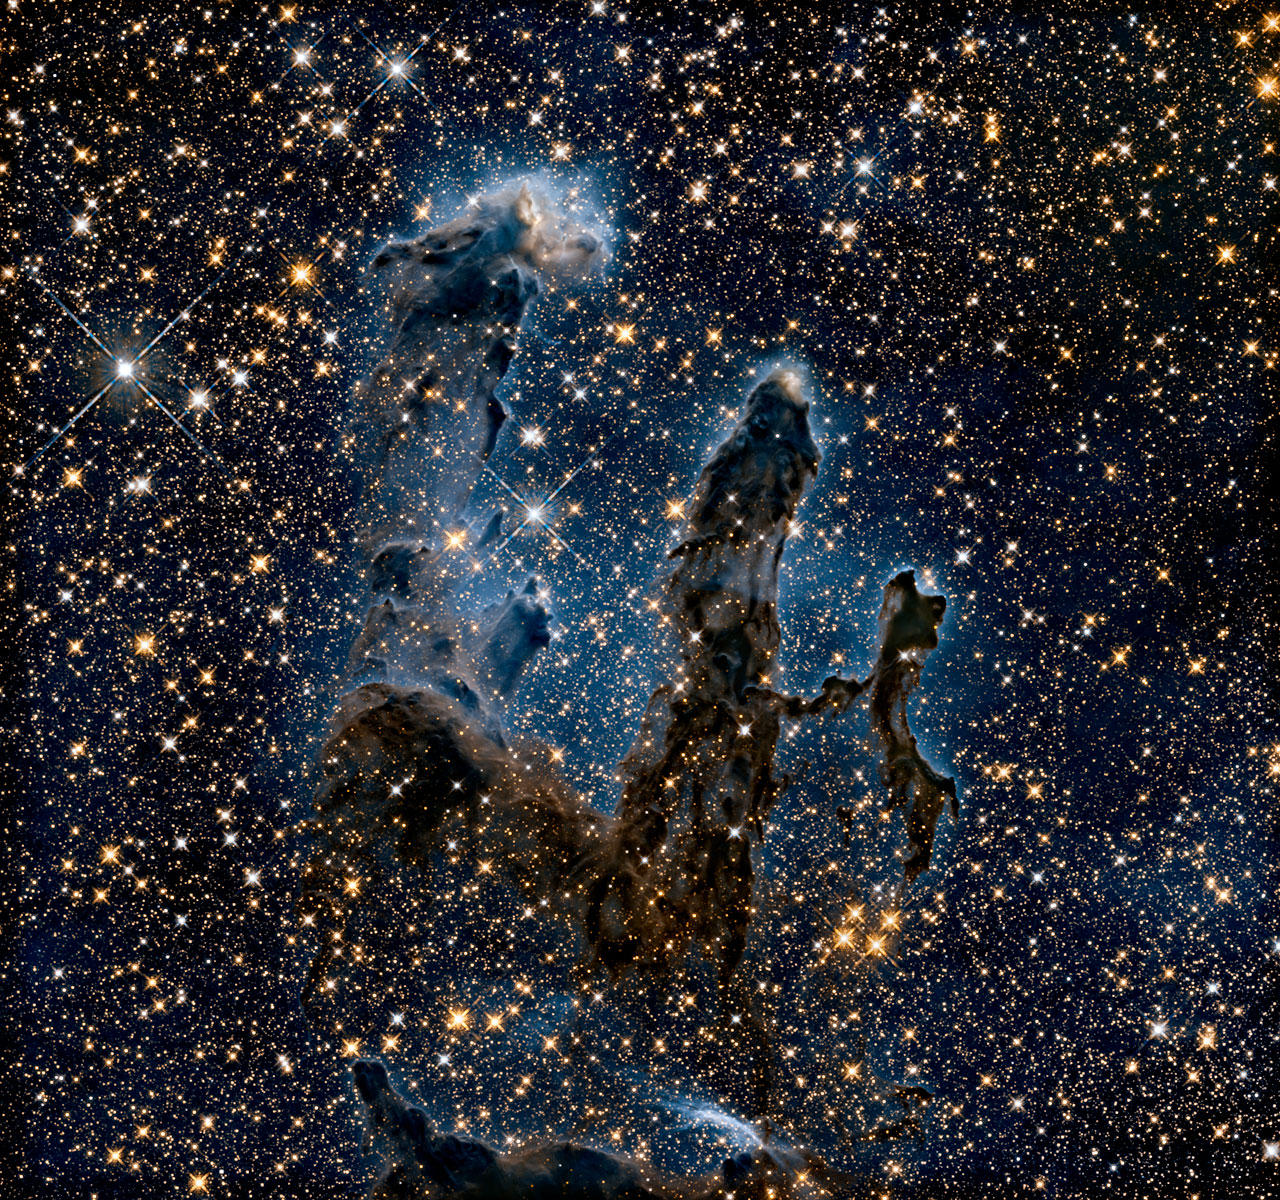 Promieniowanie podczerwone przenika przez gaz i pył, odsłaniając upiorne zarysy słupów, przez które przebija się światło niedawno narodzonych gwiazd. Źródło: NASA, ESA/Hubble and the Hubble Heritage Team